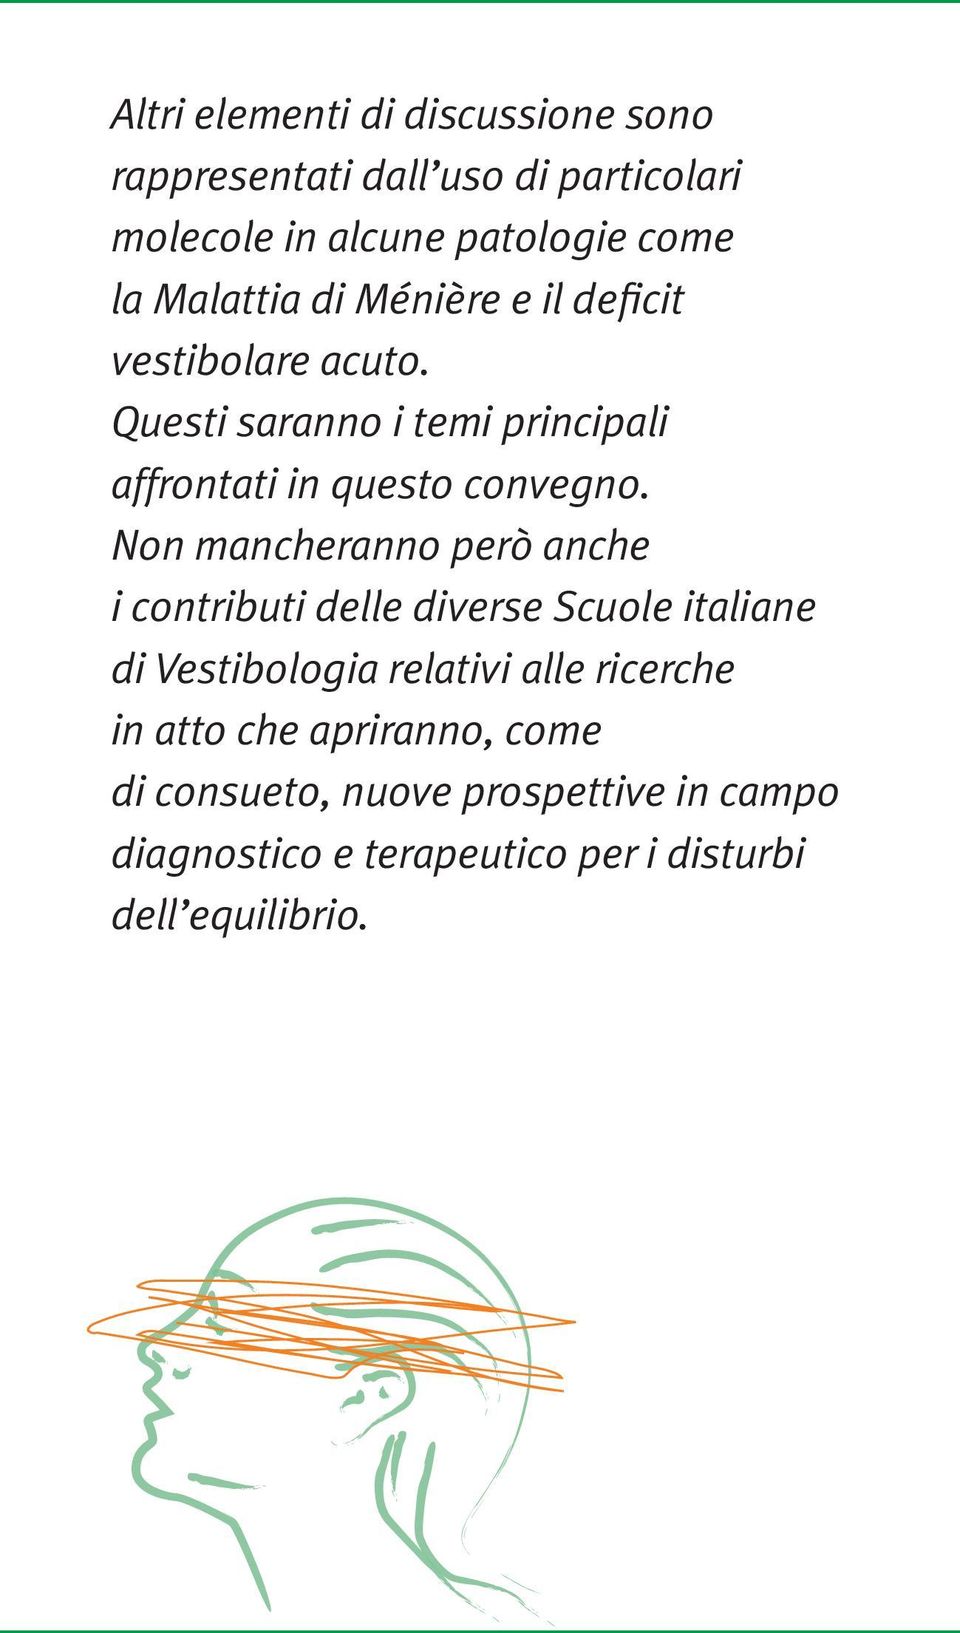 Non mancheranno però anche i contributi delle diverse Scuole italiane di Vestibologia relativi alle ricerche in